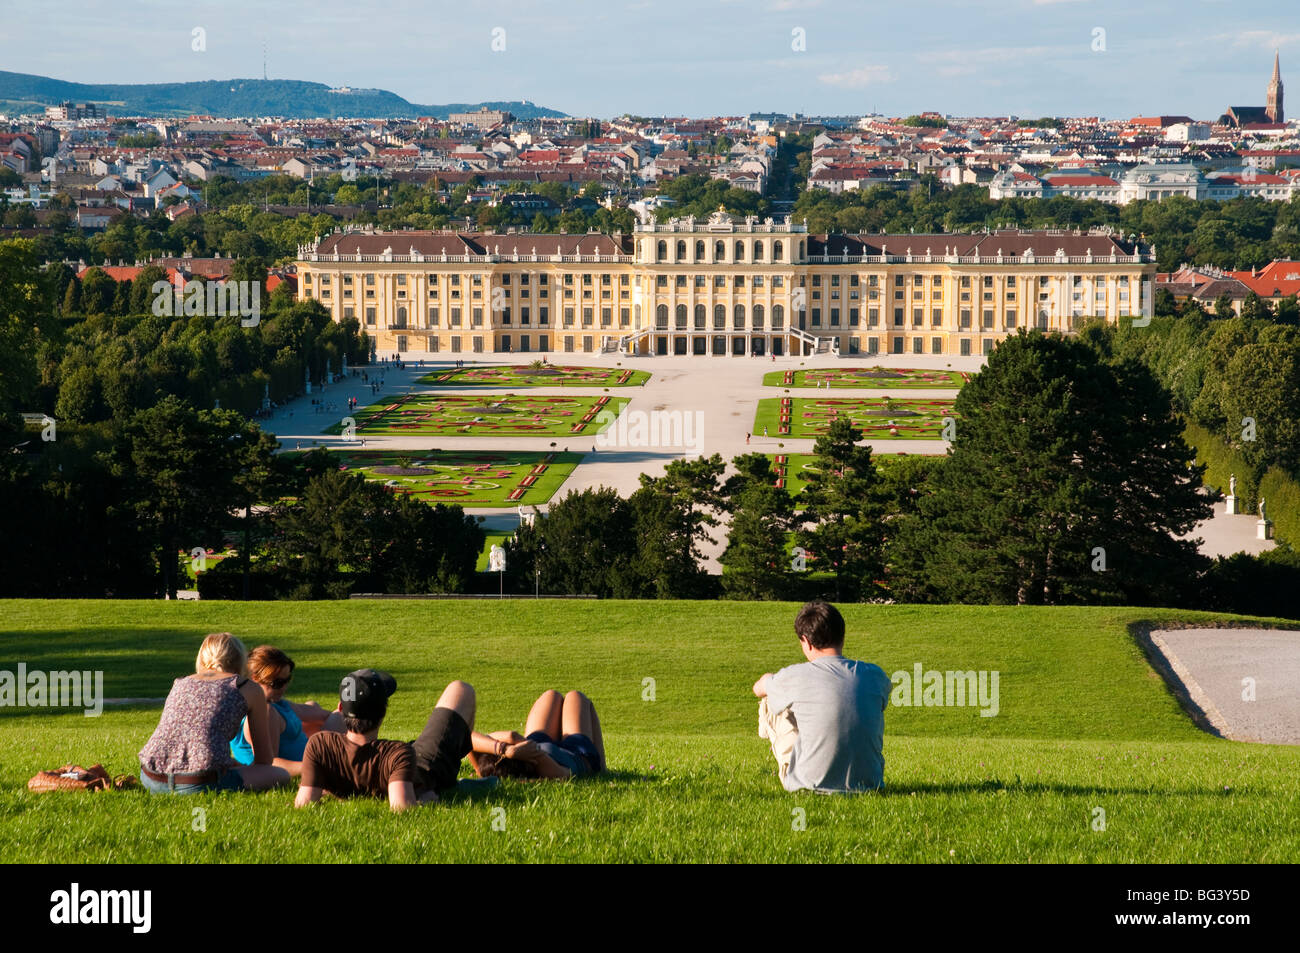 Schloss Schönbrunn Gartenanlage, Wien, Österreich | jardines de palacio, el Palacio de Schönbrunn, Viena, Austria Foto de stock